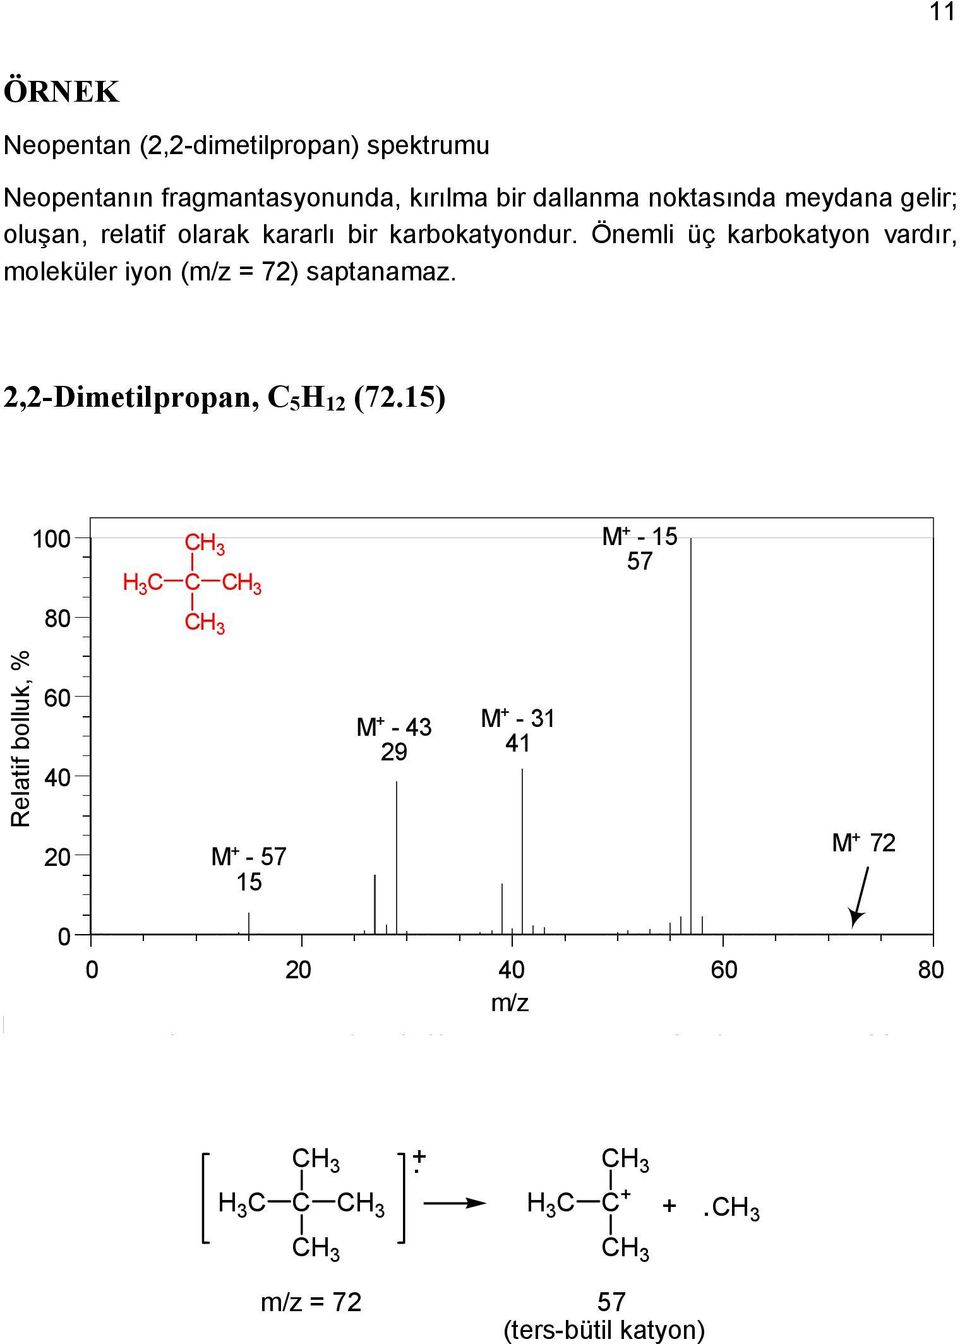 Önemli üç karbokatyon vardır, moleküler iyon (m/z = 72) saptanamaz. 2,2-Dimetilpropan, 5 H 12 (72.